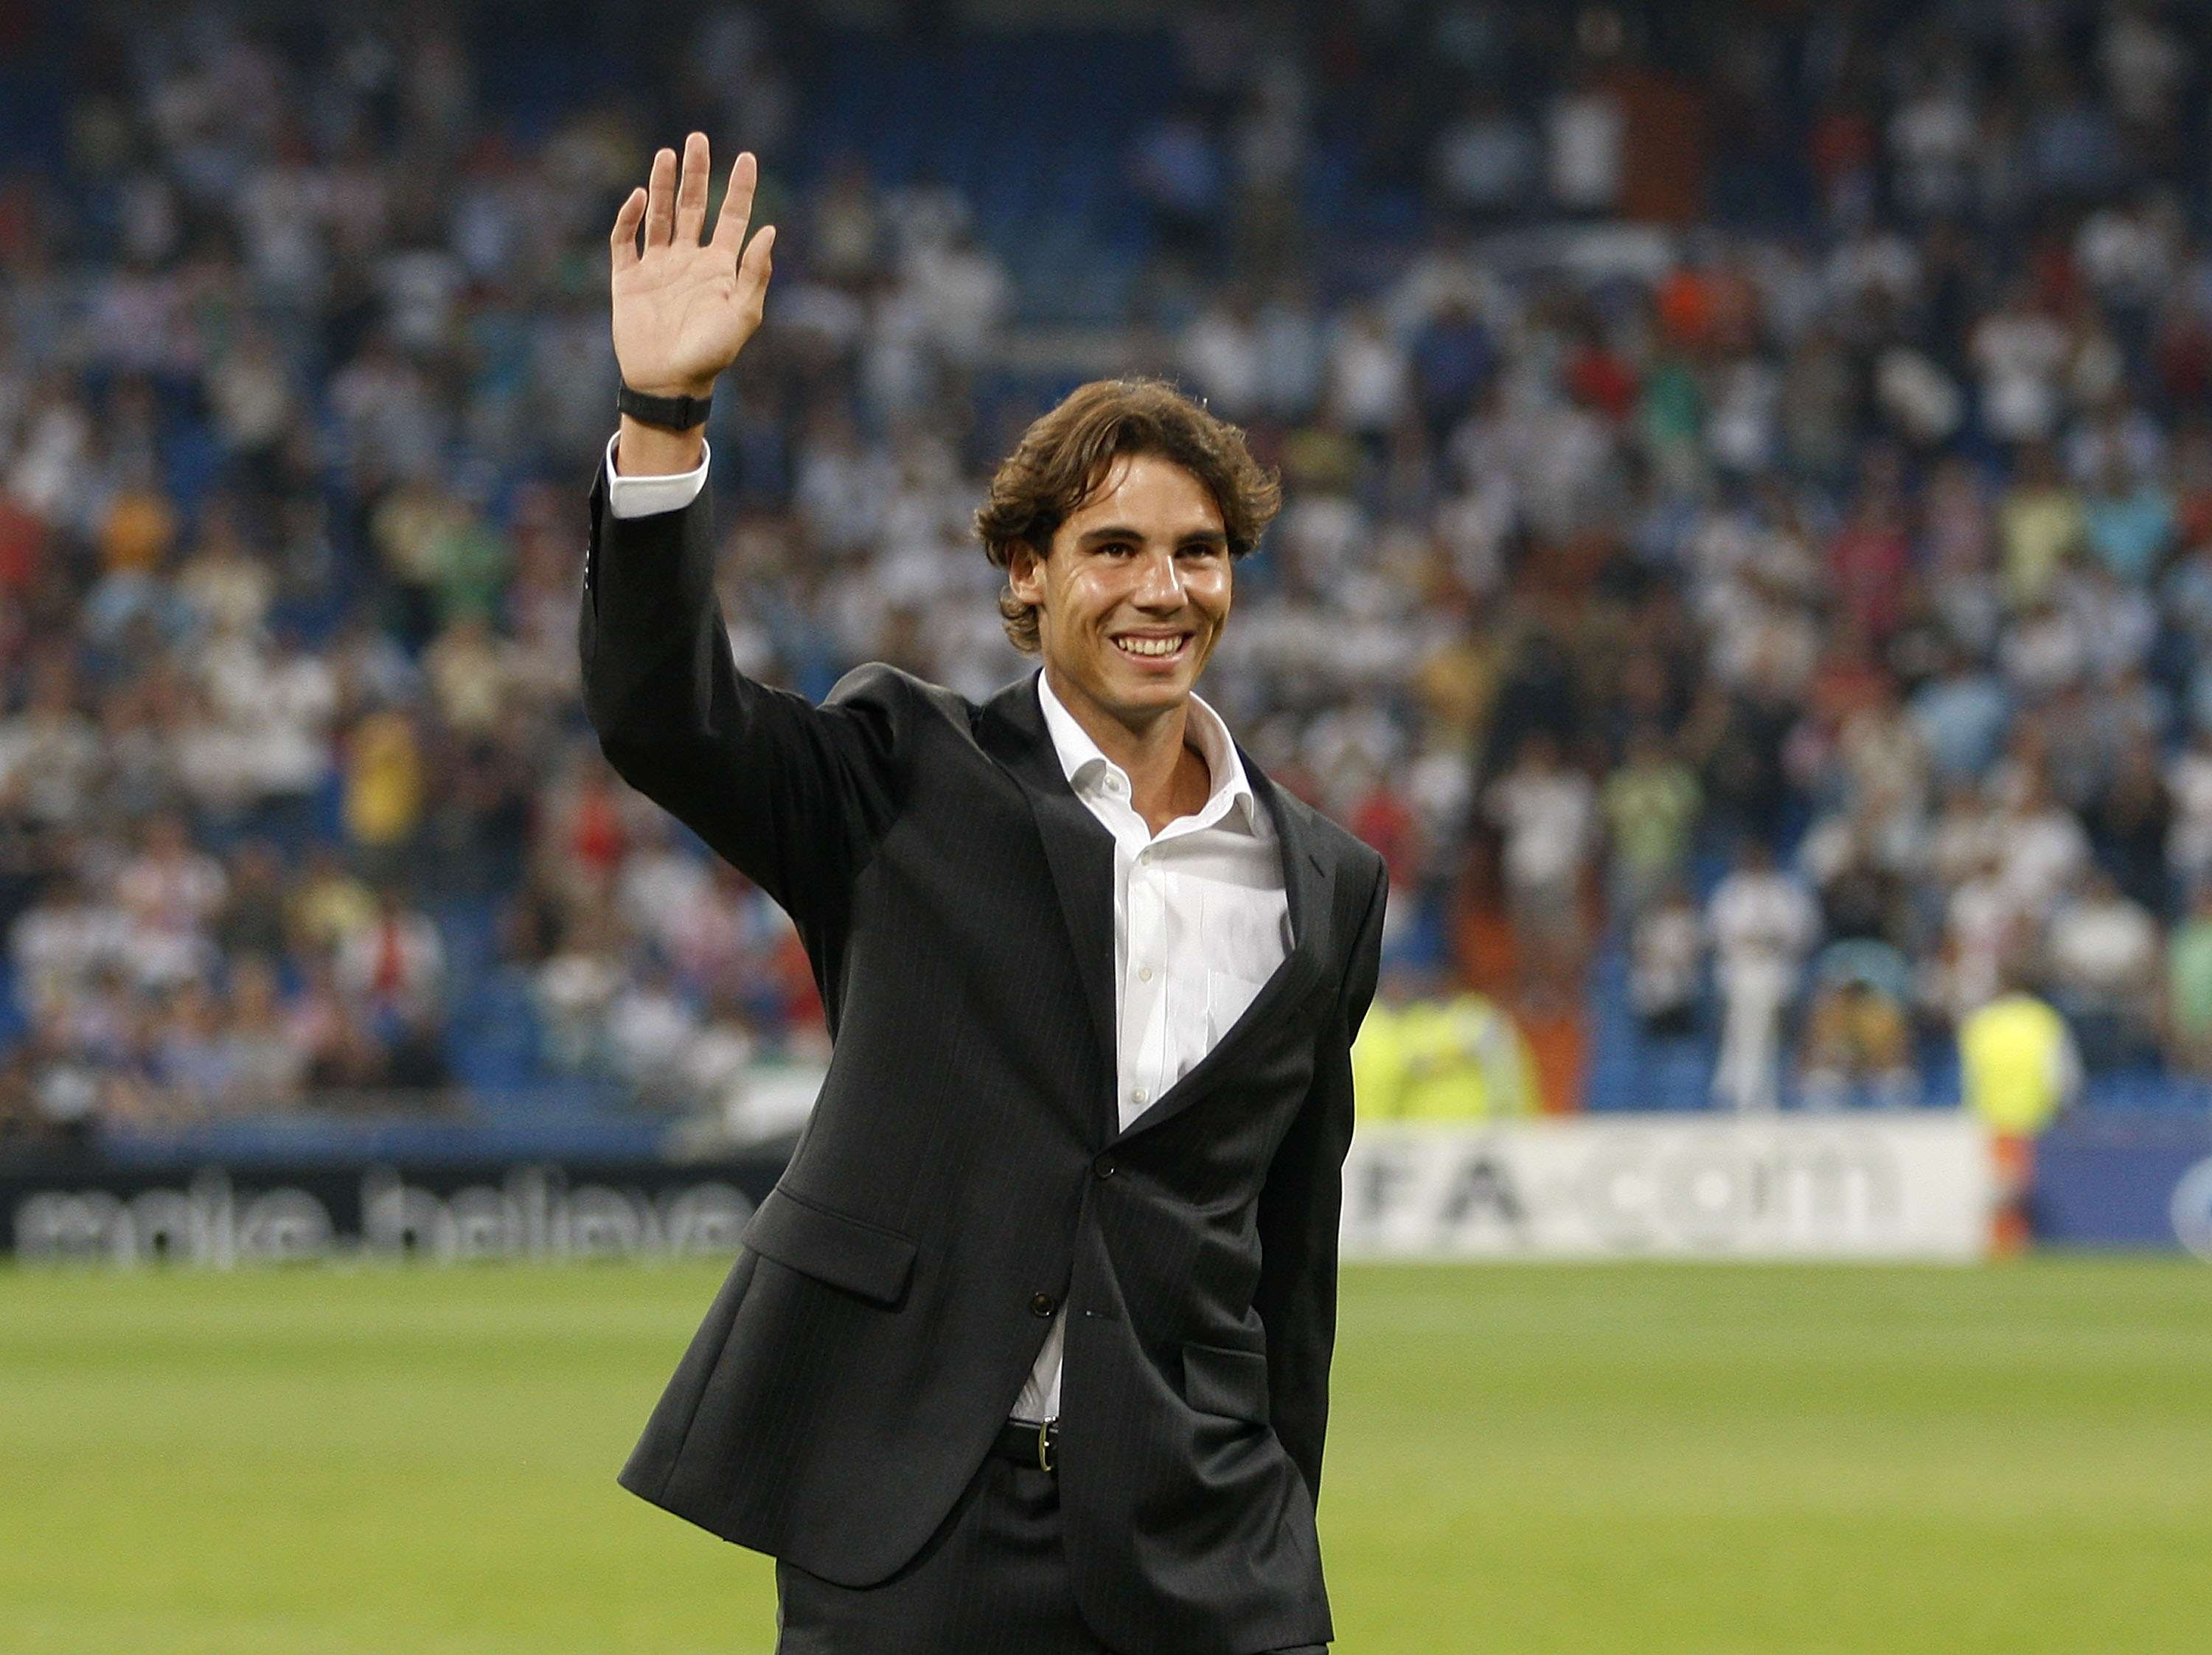 Rafael Nadal real madrid 2010-2011